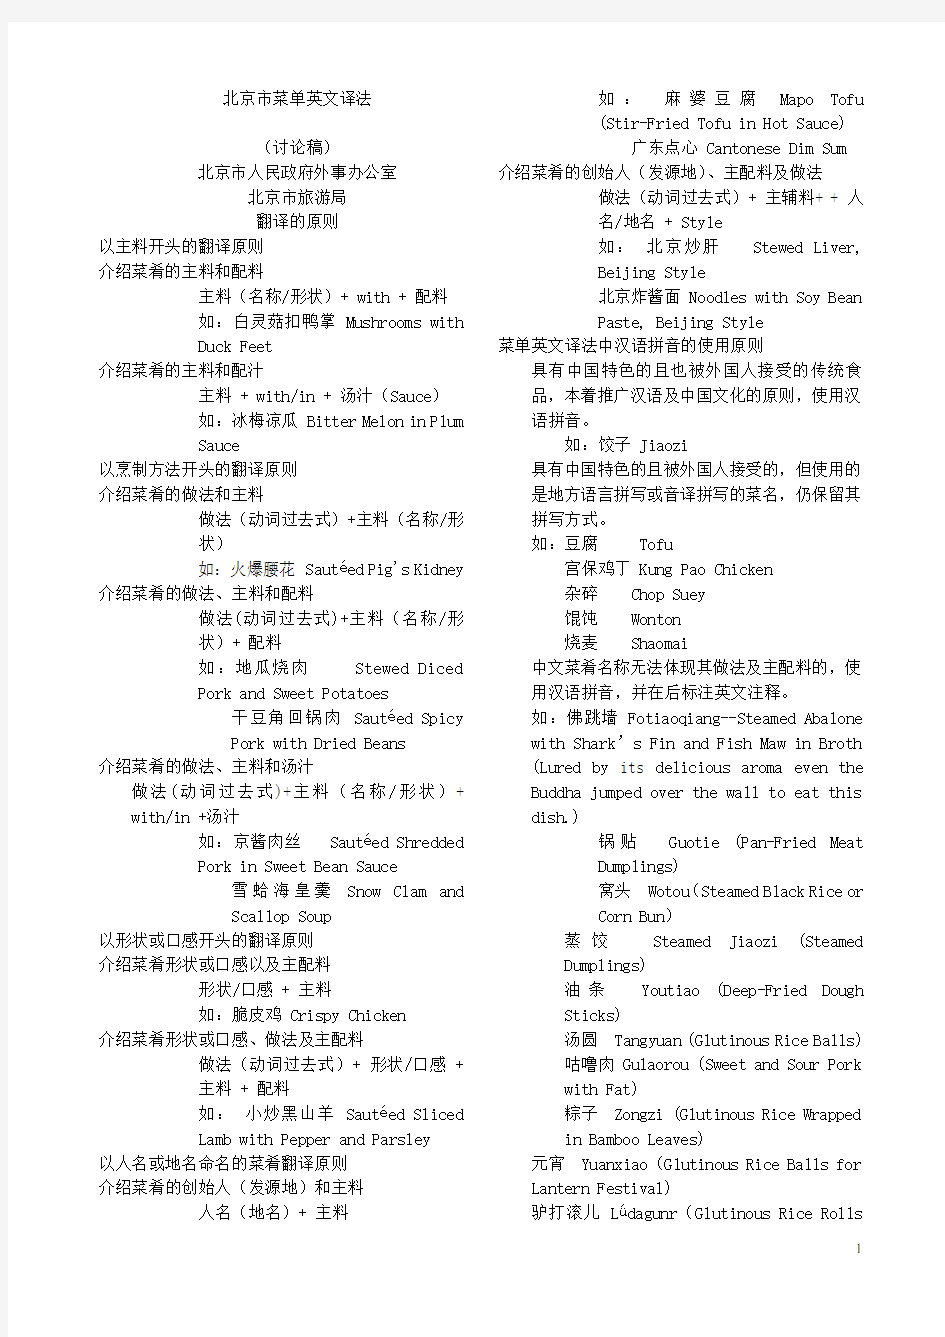 2008北京奥运会中文菜单英文译法